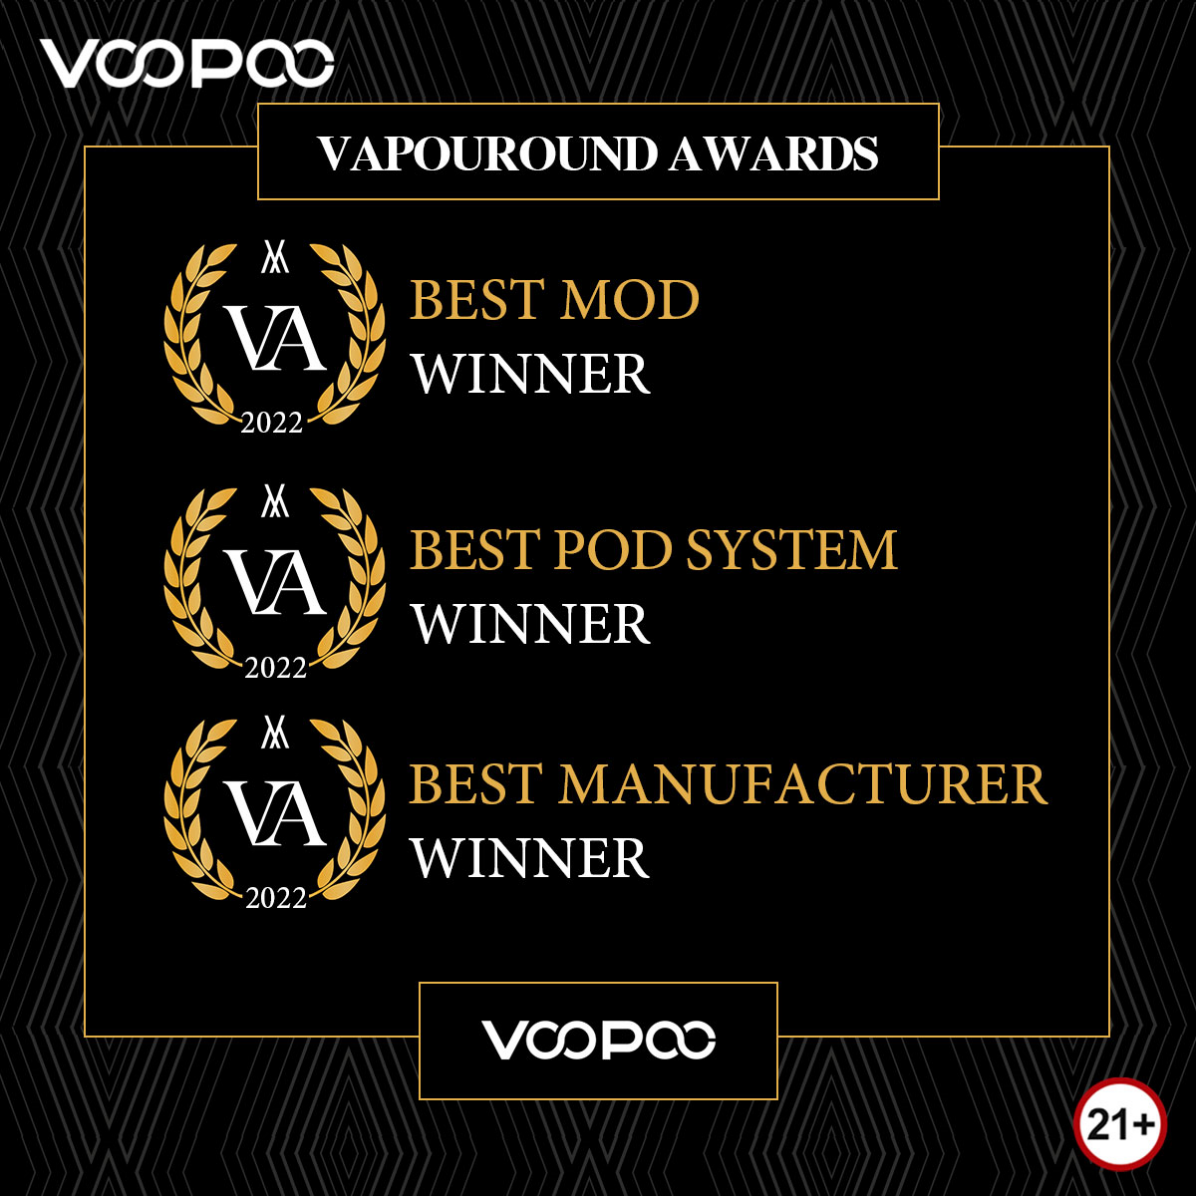 фото: Достигнув новых высот, VOOPOO завоевал 3 награды на SEVENTH ANNUAL VAPOUROUND AWARDS